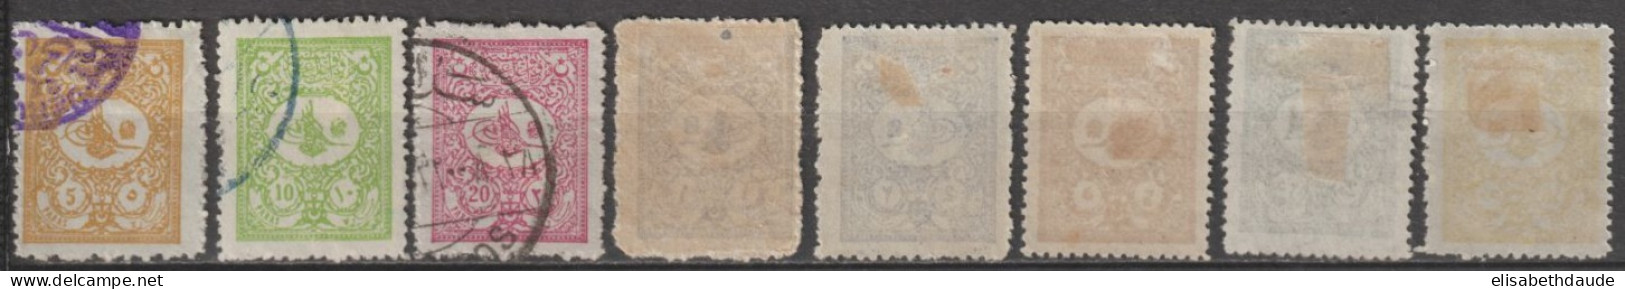 1901 - TURQUIE - SERIE COMPLETE YVERT N°90/97 * MH / OBLITERES - COTE = 385 EUR. - Unused Stamps